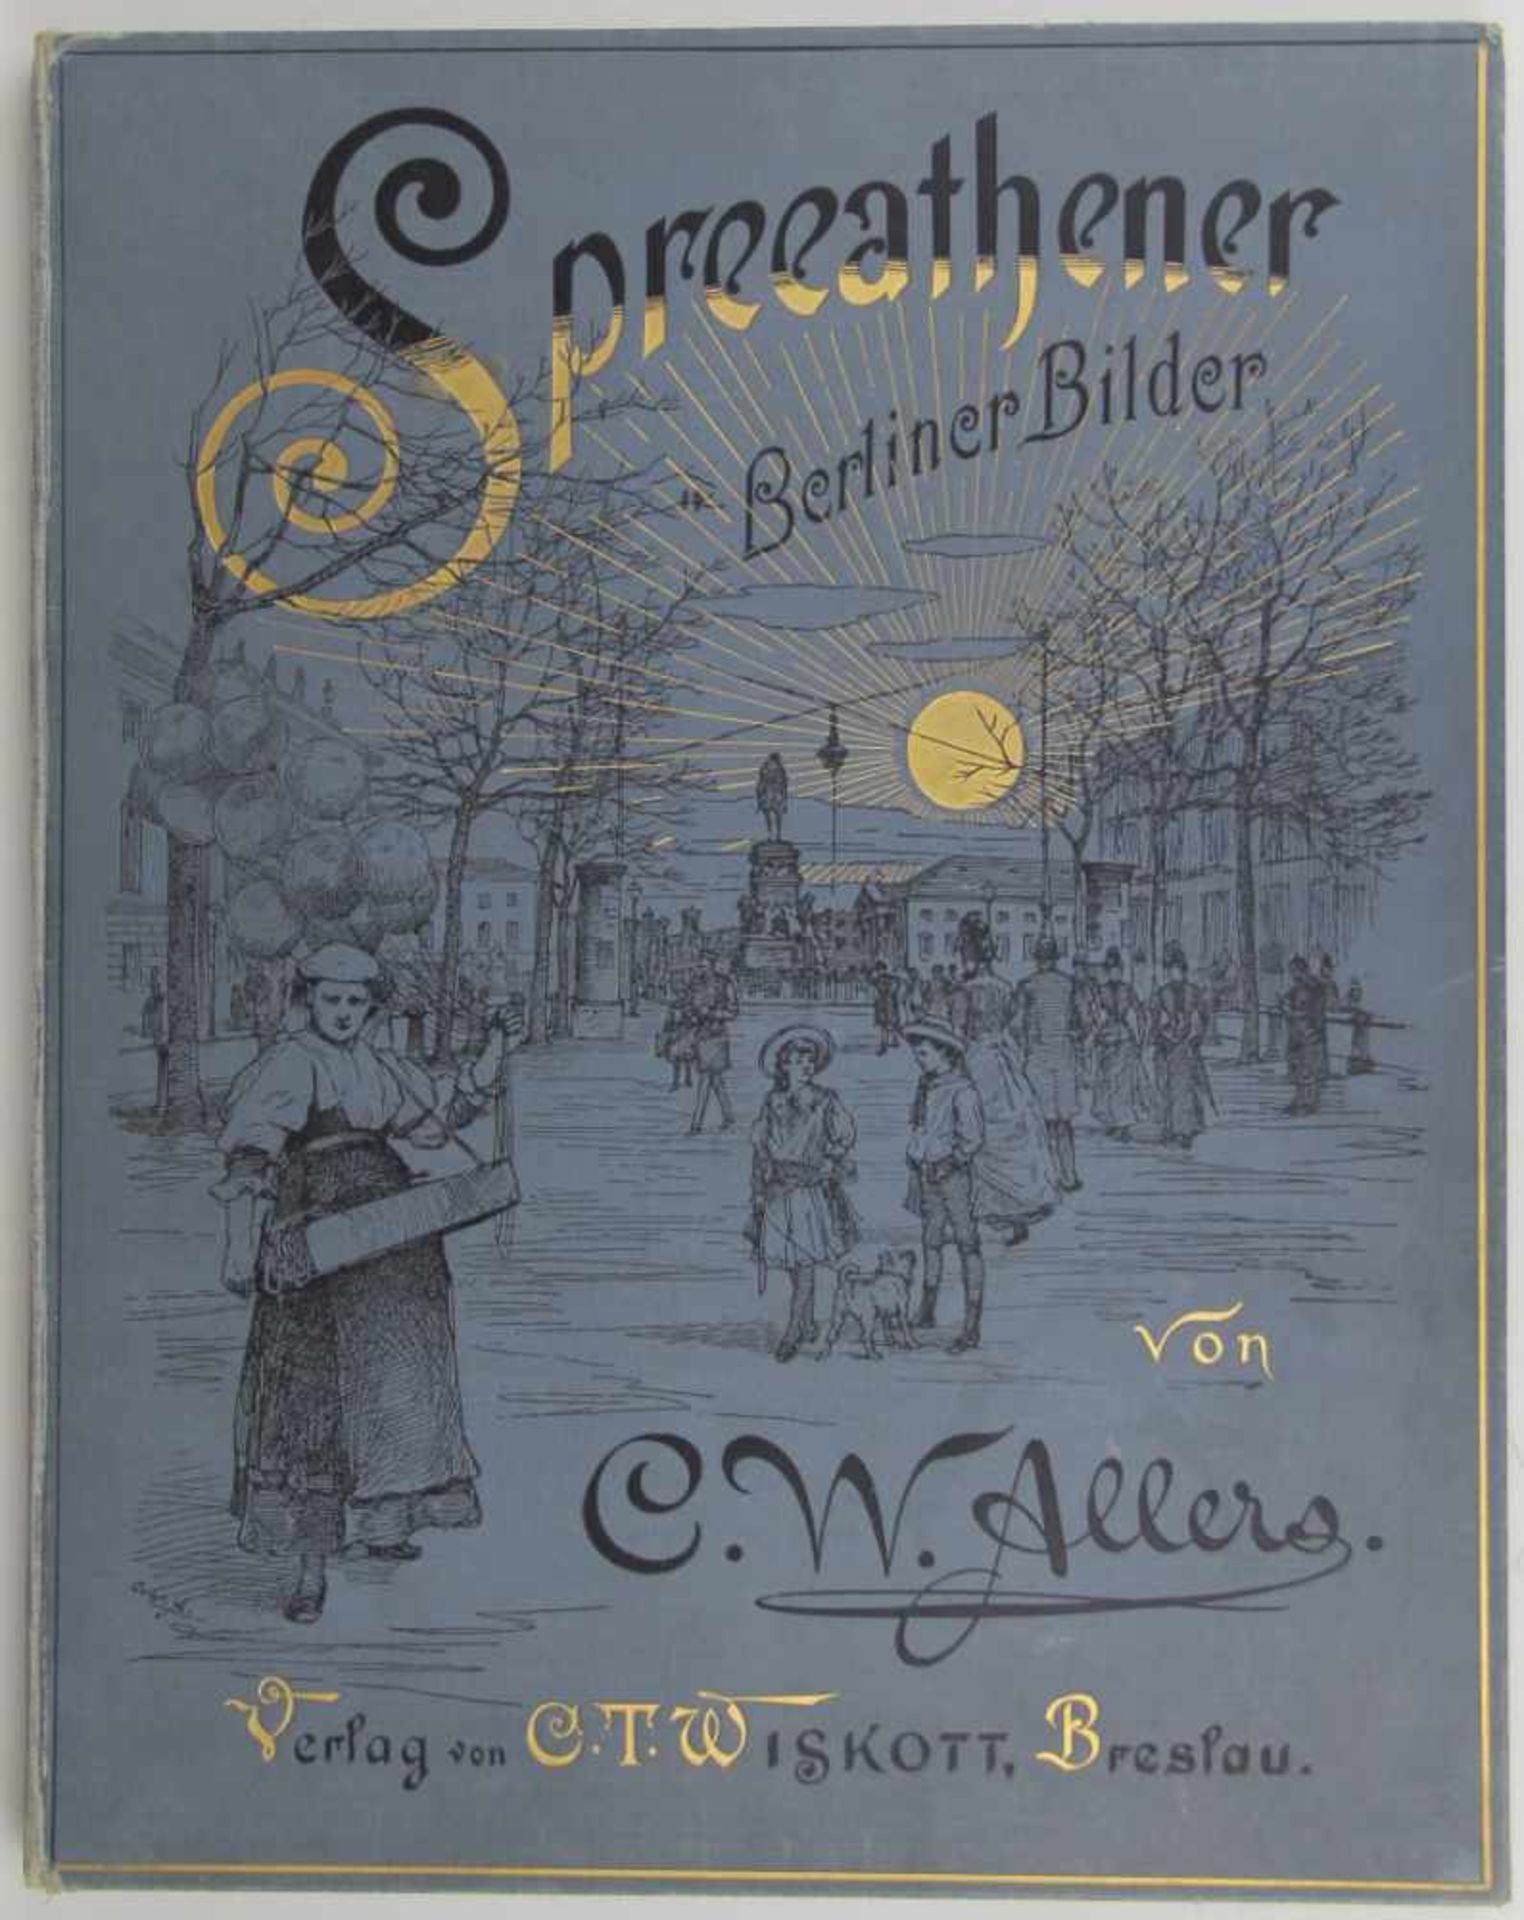 Allers, Christian Wilhelm: Spreeathener. Berliner Bilder. Breslau, C. T. Wiskott (1889). Mit 30